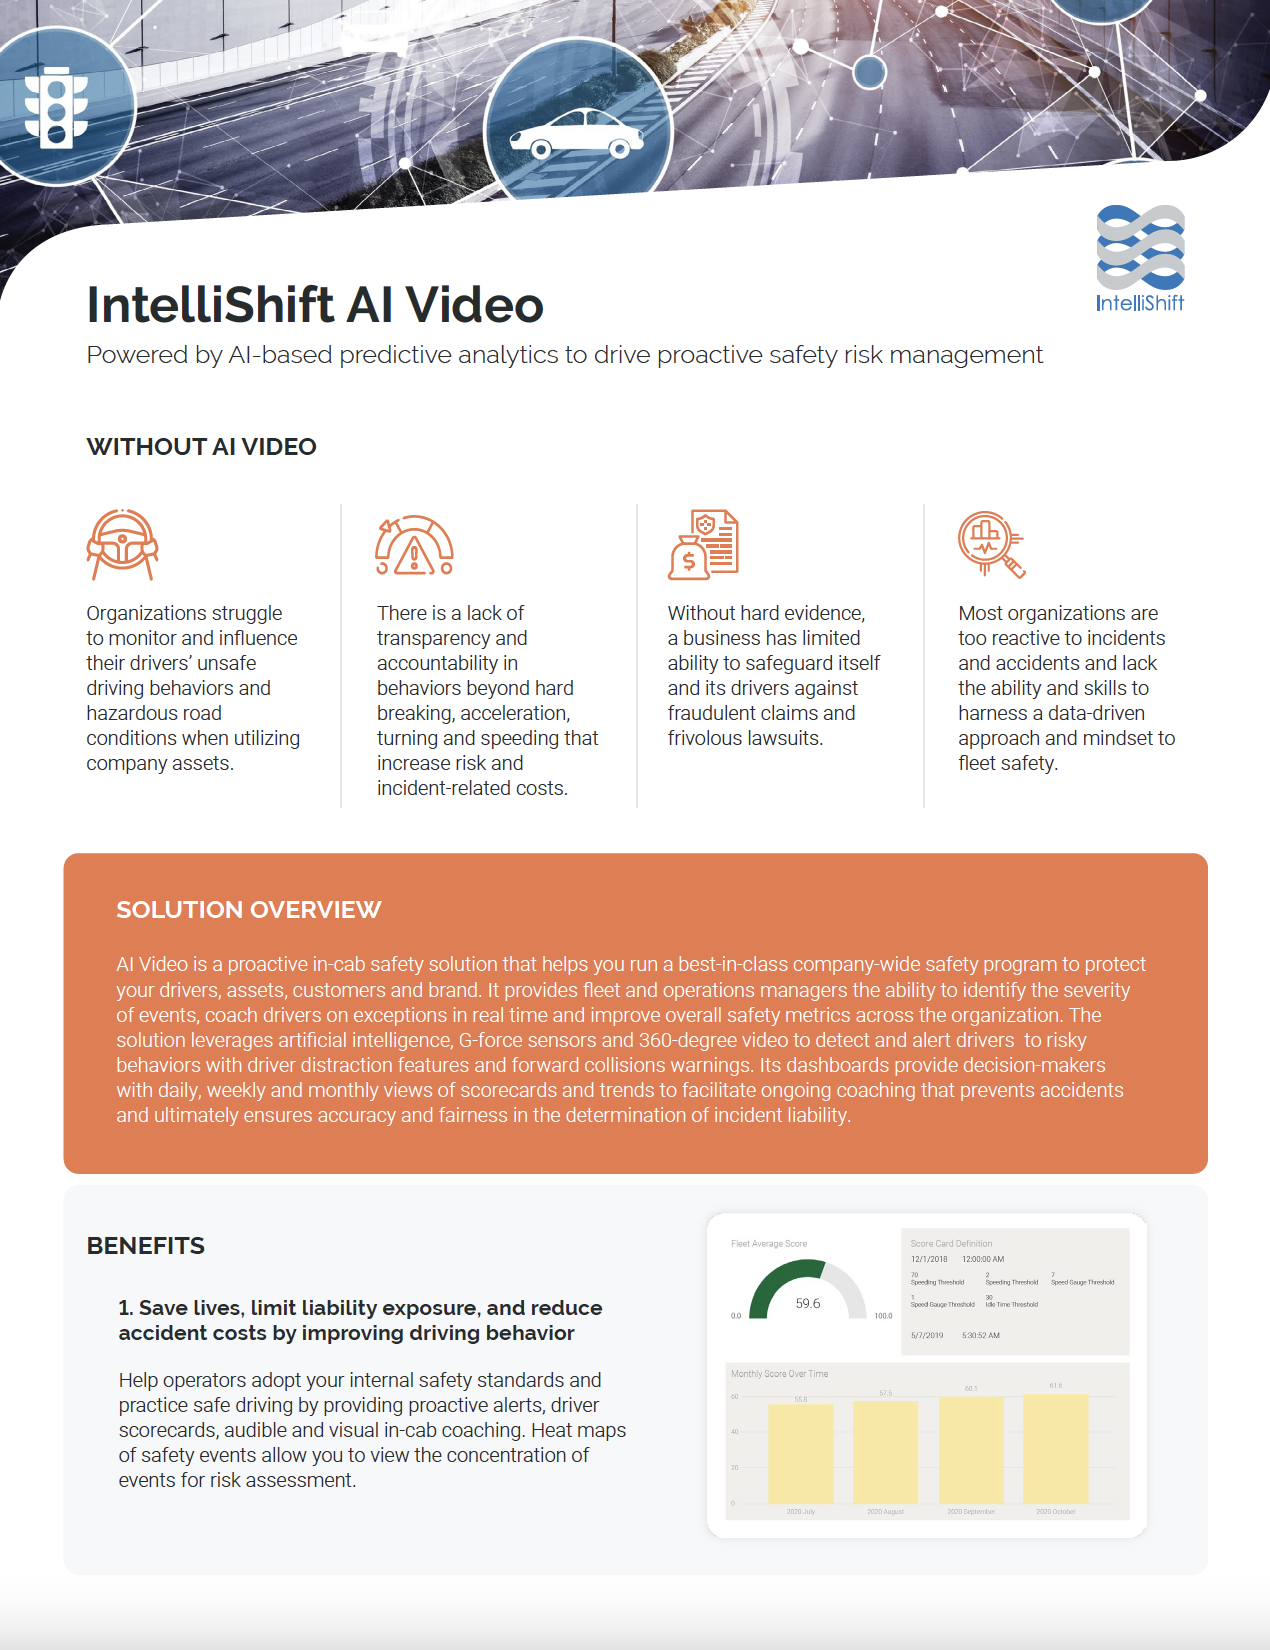 IntelliShift AI Video Guide